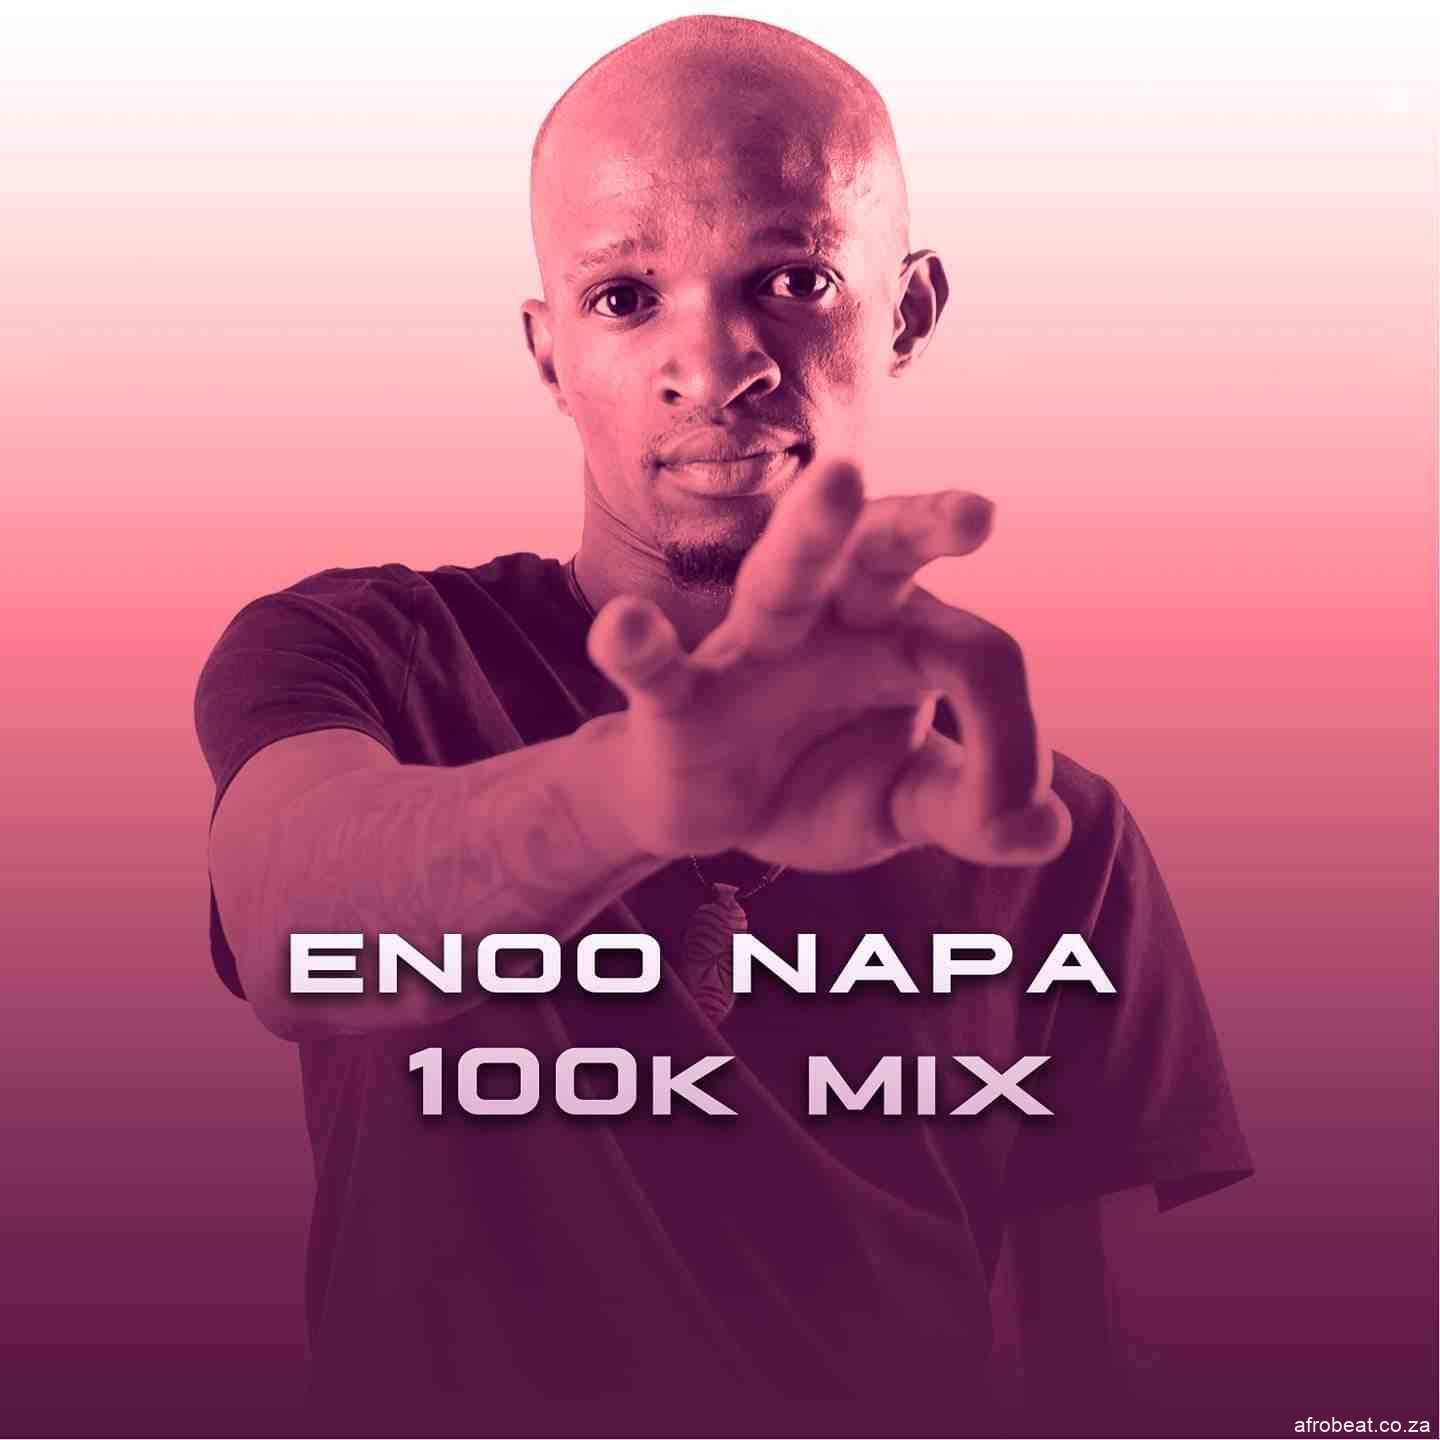 180700588 328455191974161 6988872224952296567 n - Enoo Napa – 100K Appreciation Mix